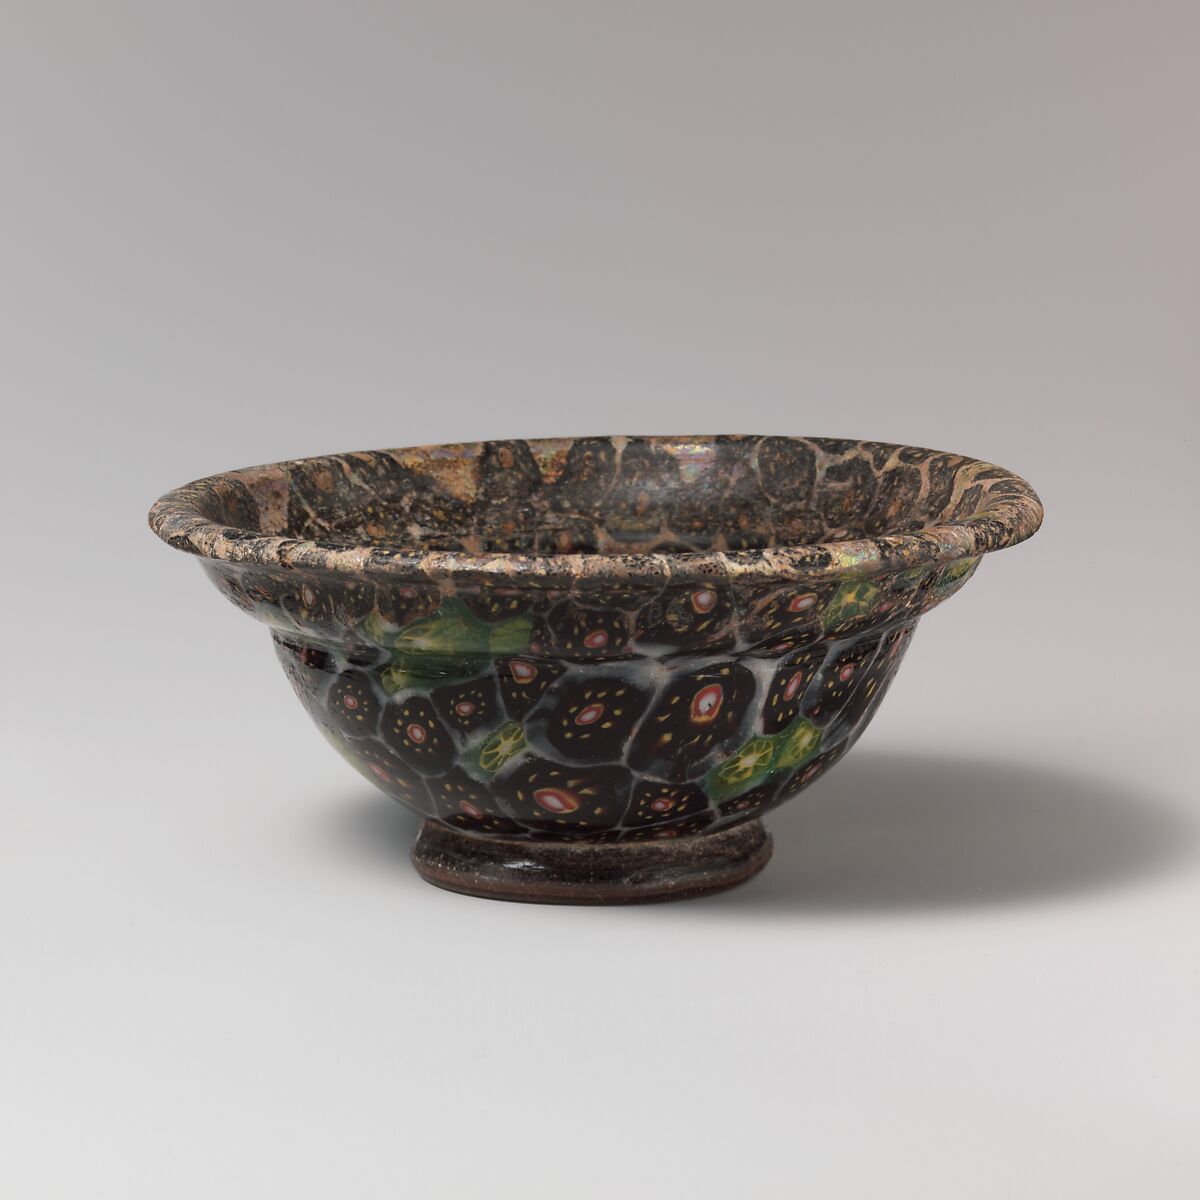 Glass mosaic carinated bowl, Glass, Roman 